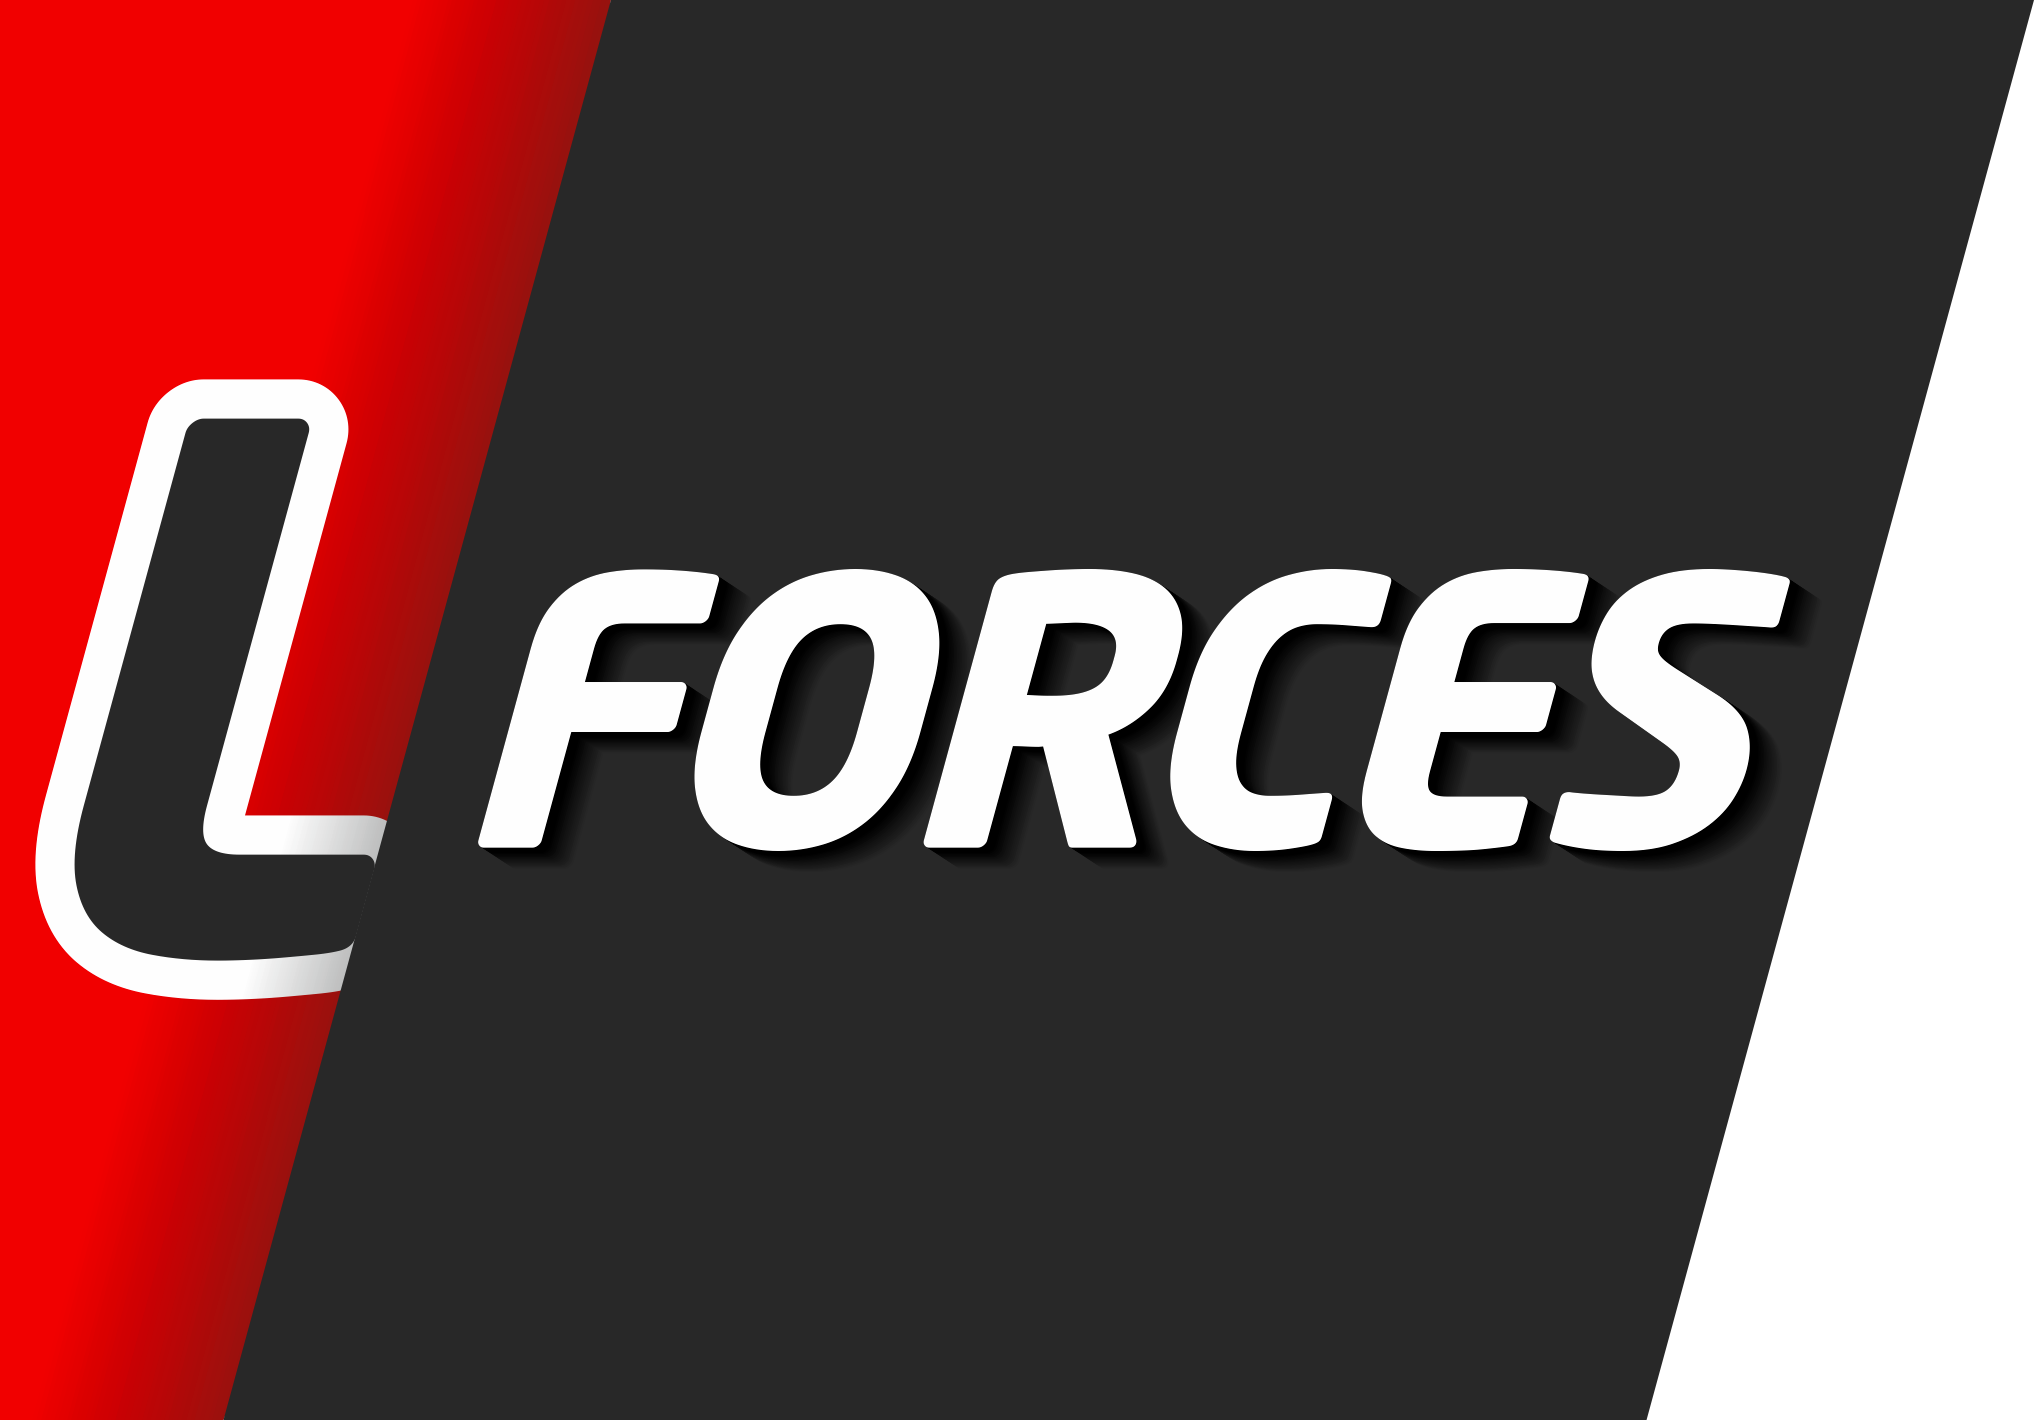 LForces logo